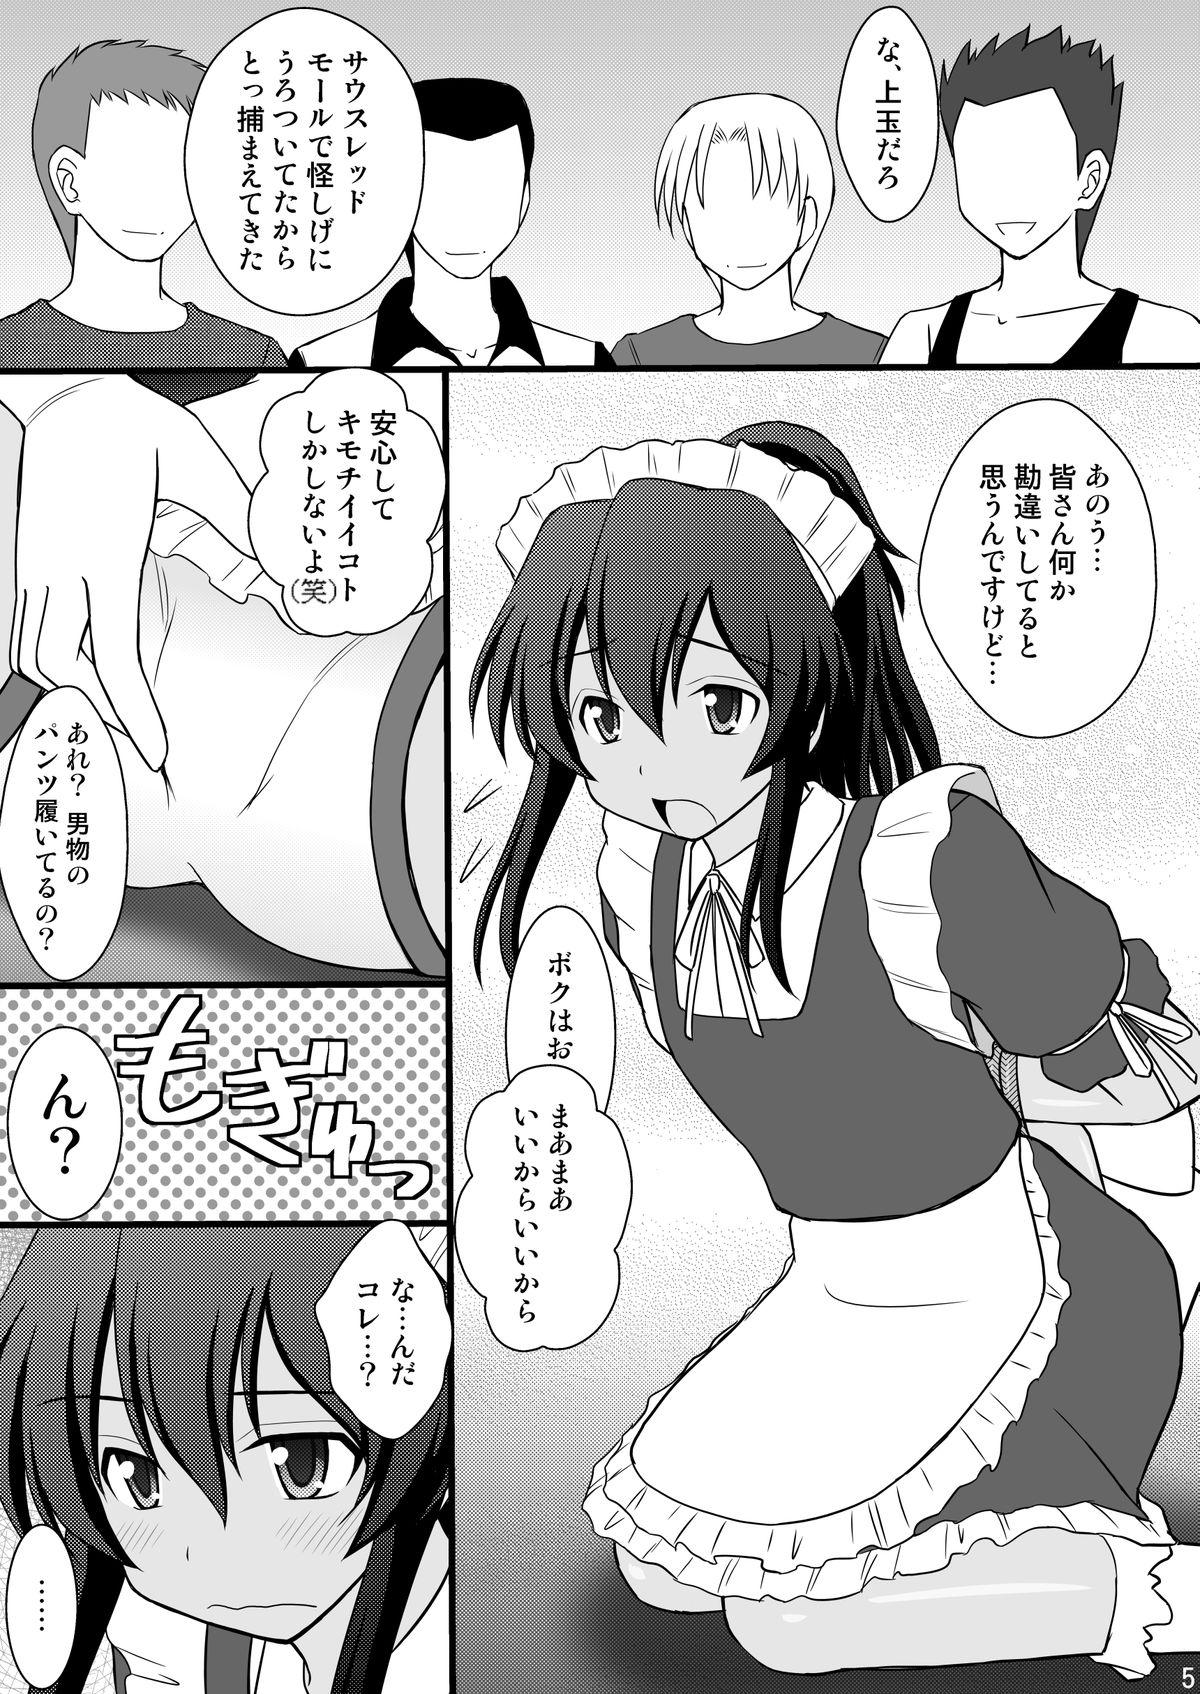 Wank Otokonoko desu ga Nani ka? - Ryuugajou nanana no maizoukin Housewife - Page 2